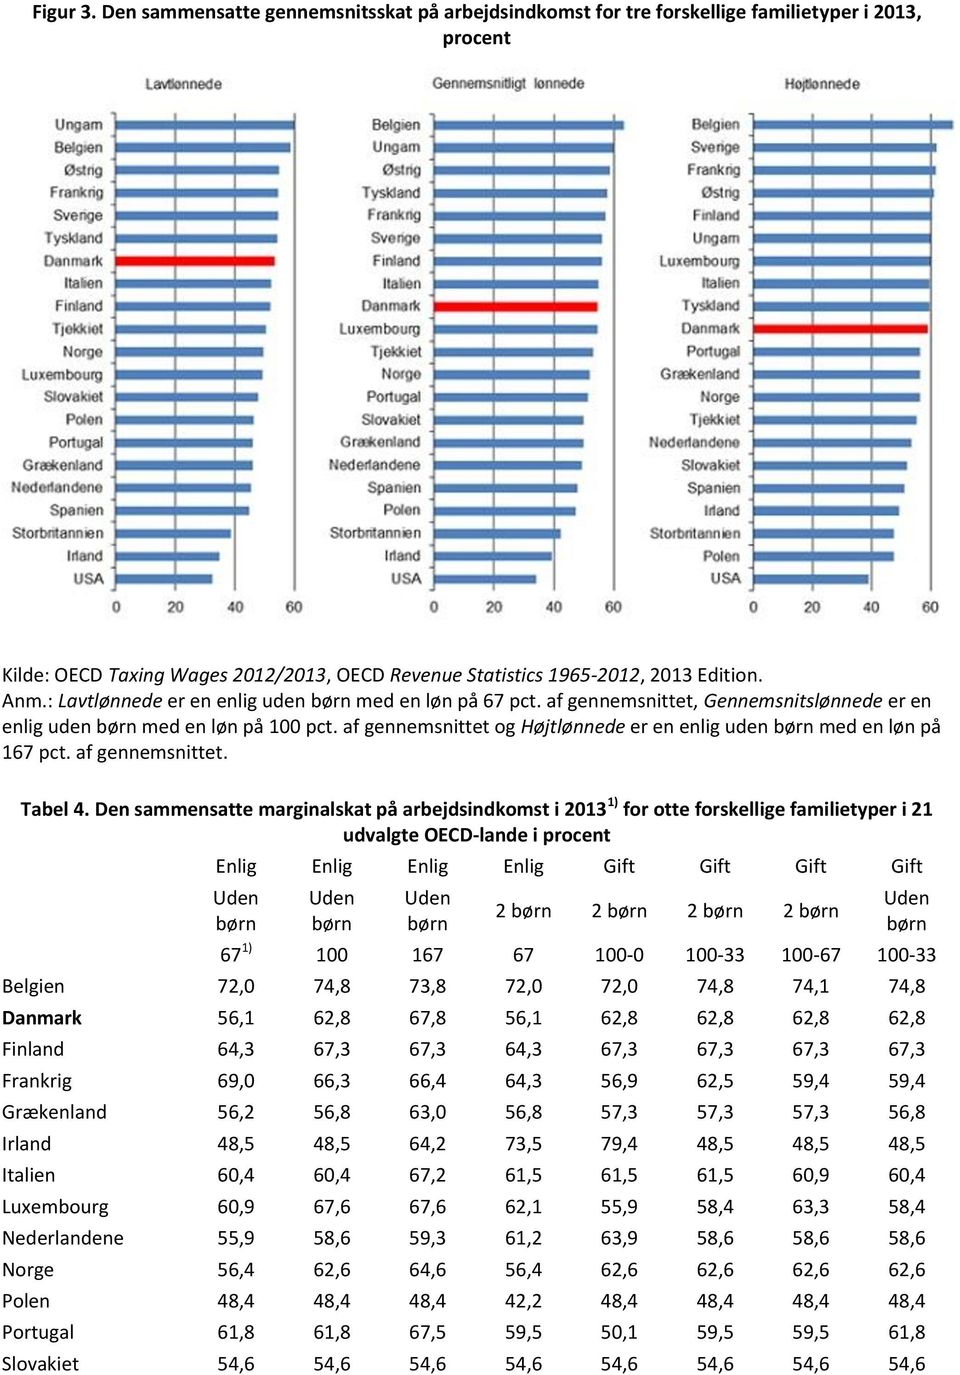 Den sammensatte marginalskat på arbejdsindkomst i 2013 1) for otte forskellige familietyper i 21 udvalgte OECD-lande i procent 2 2 2 2 Belgien 72,0 74,8 73,8 72,0 72,0 74,8 74,1 74,8 Danmark 56,1